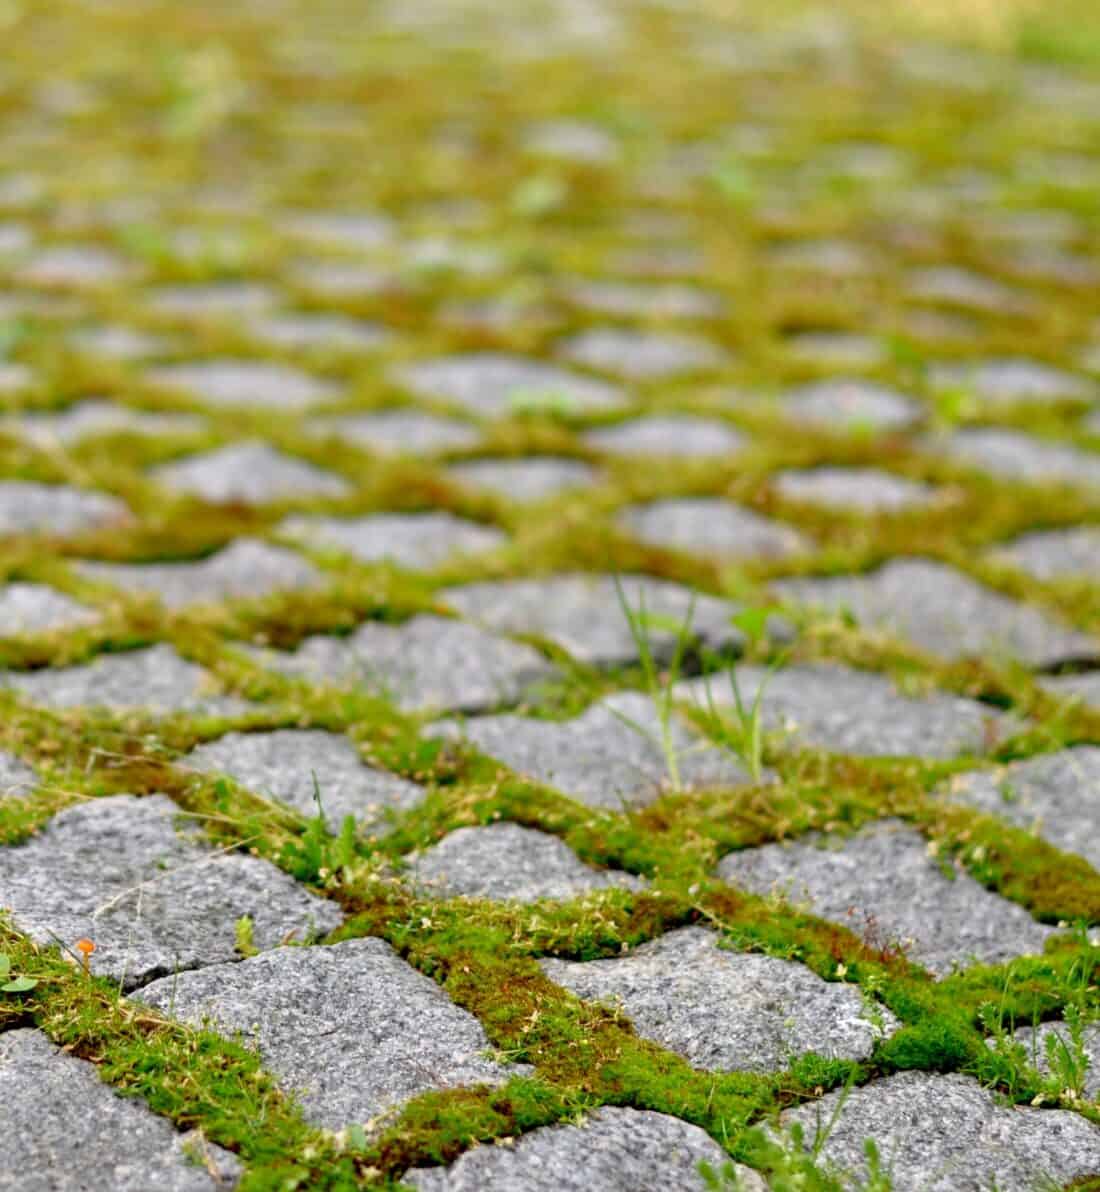 Moss growing on a cobblestone walkway.